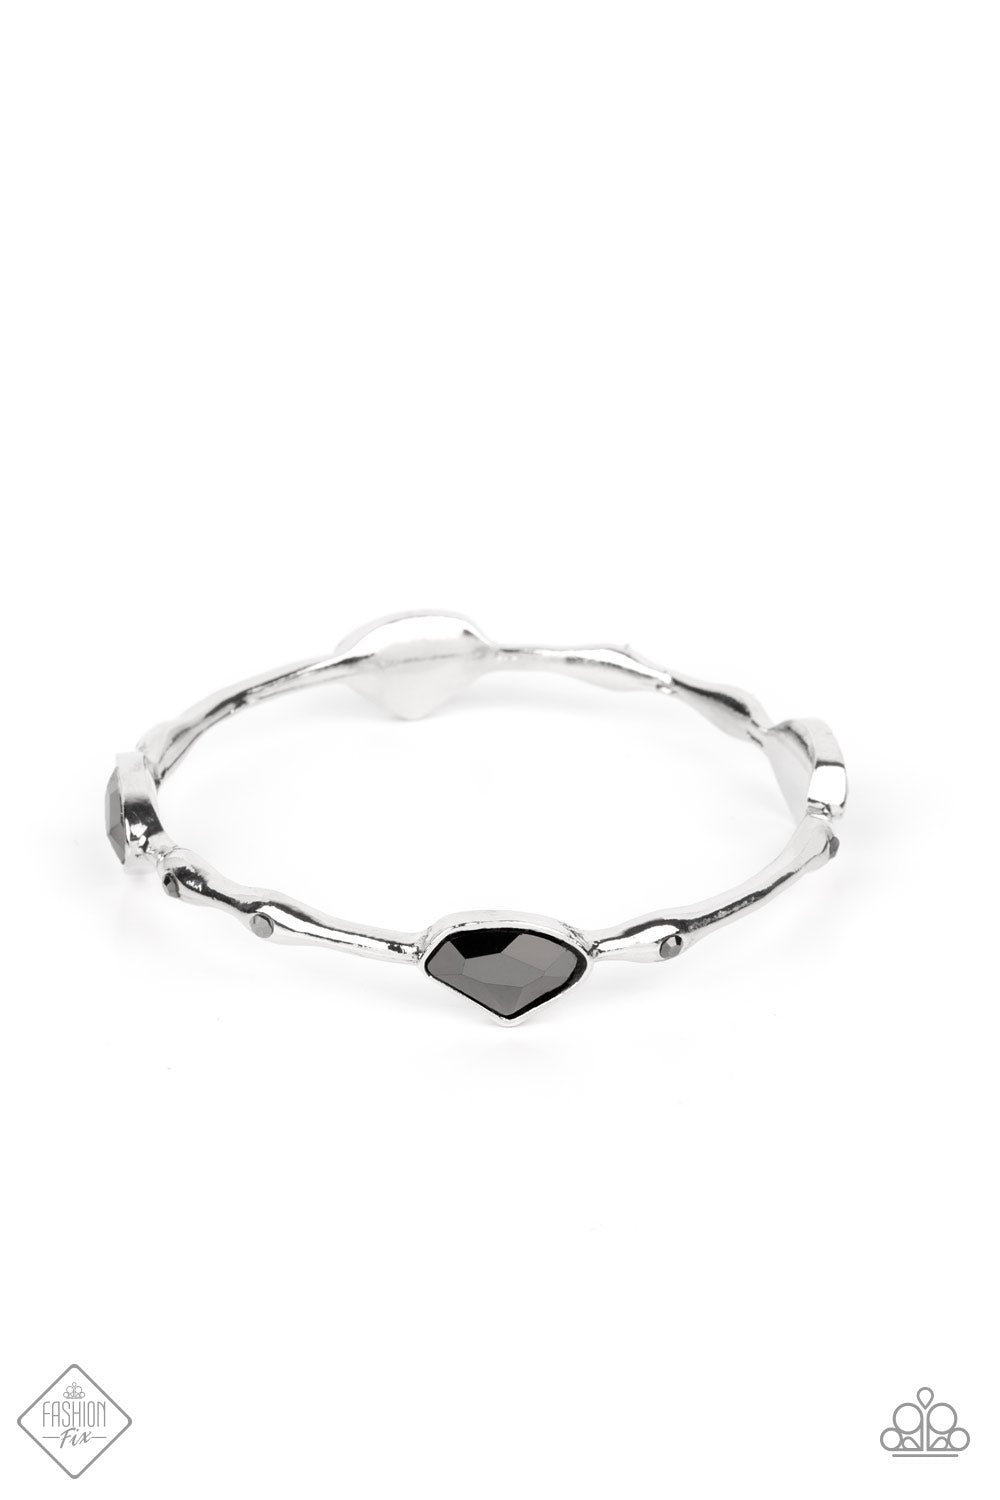 paparazzi-accessories-chiseled-craze-silver-bracelet